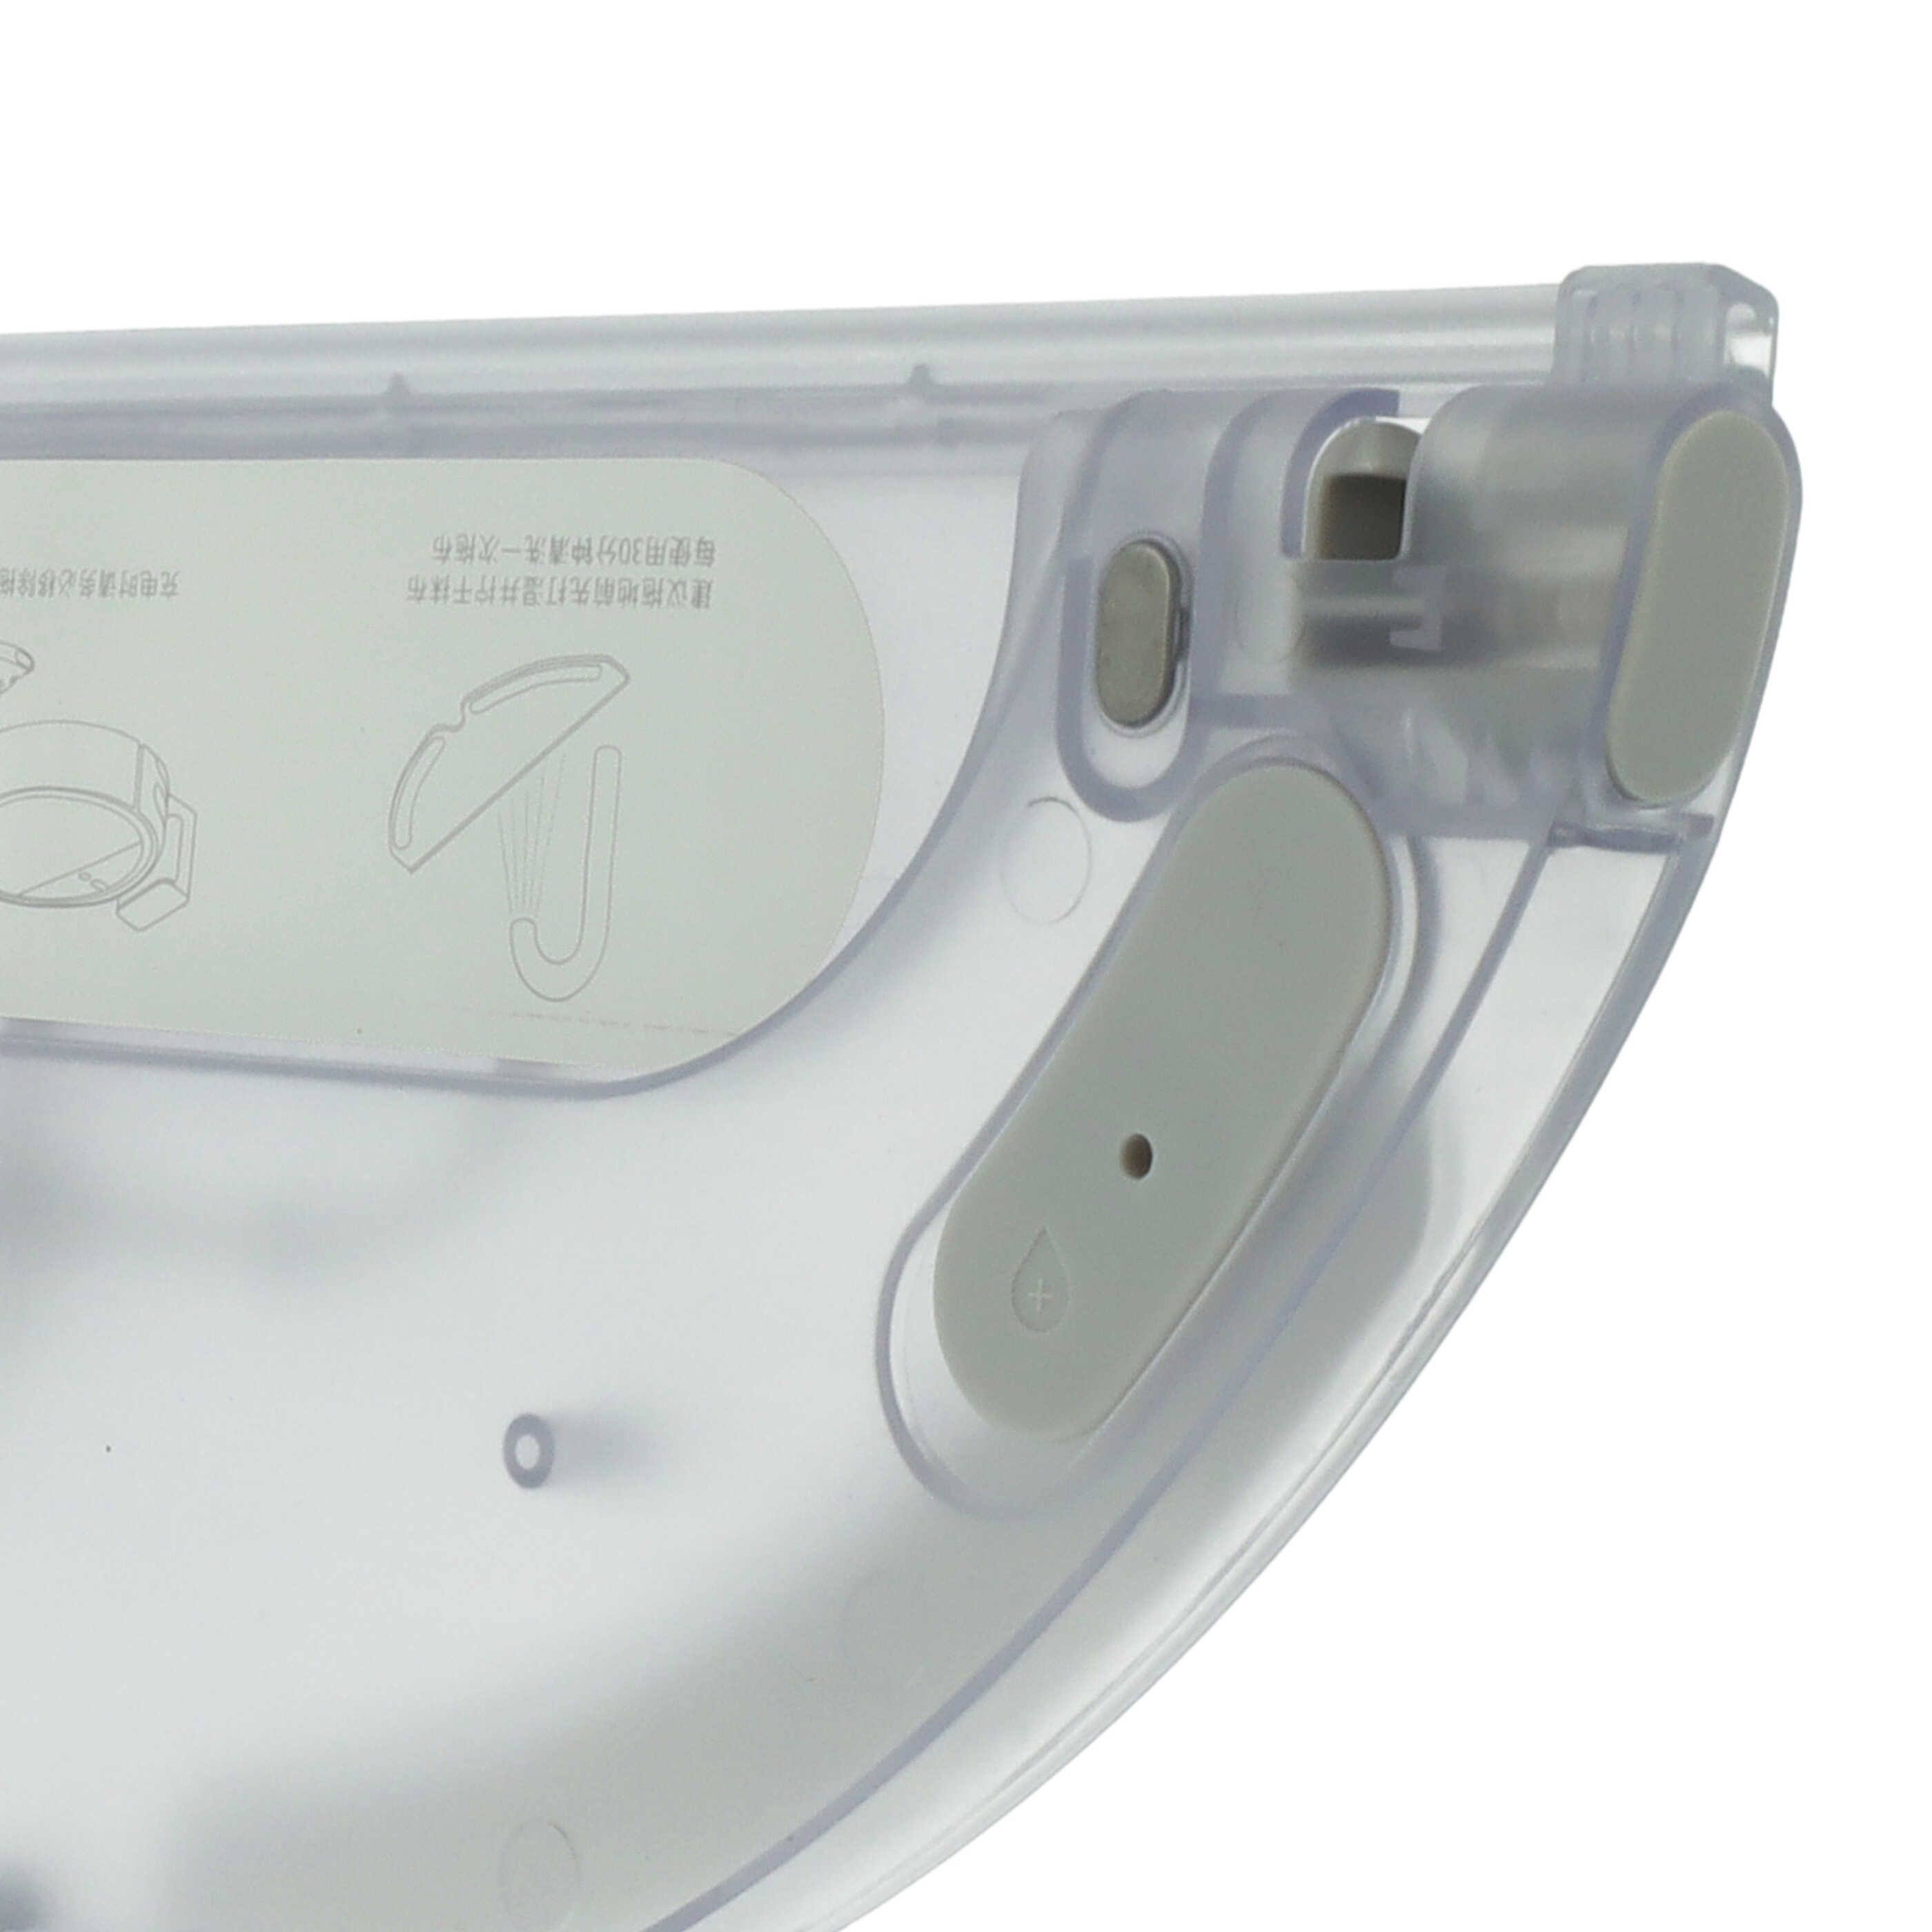 Wischtuchhalterung passend für Xiaomi Mijia 1C Saugroboter - 32,5 x 13,4 x 1,6 cm, 190 g